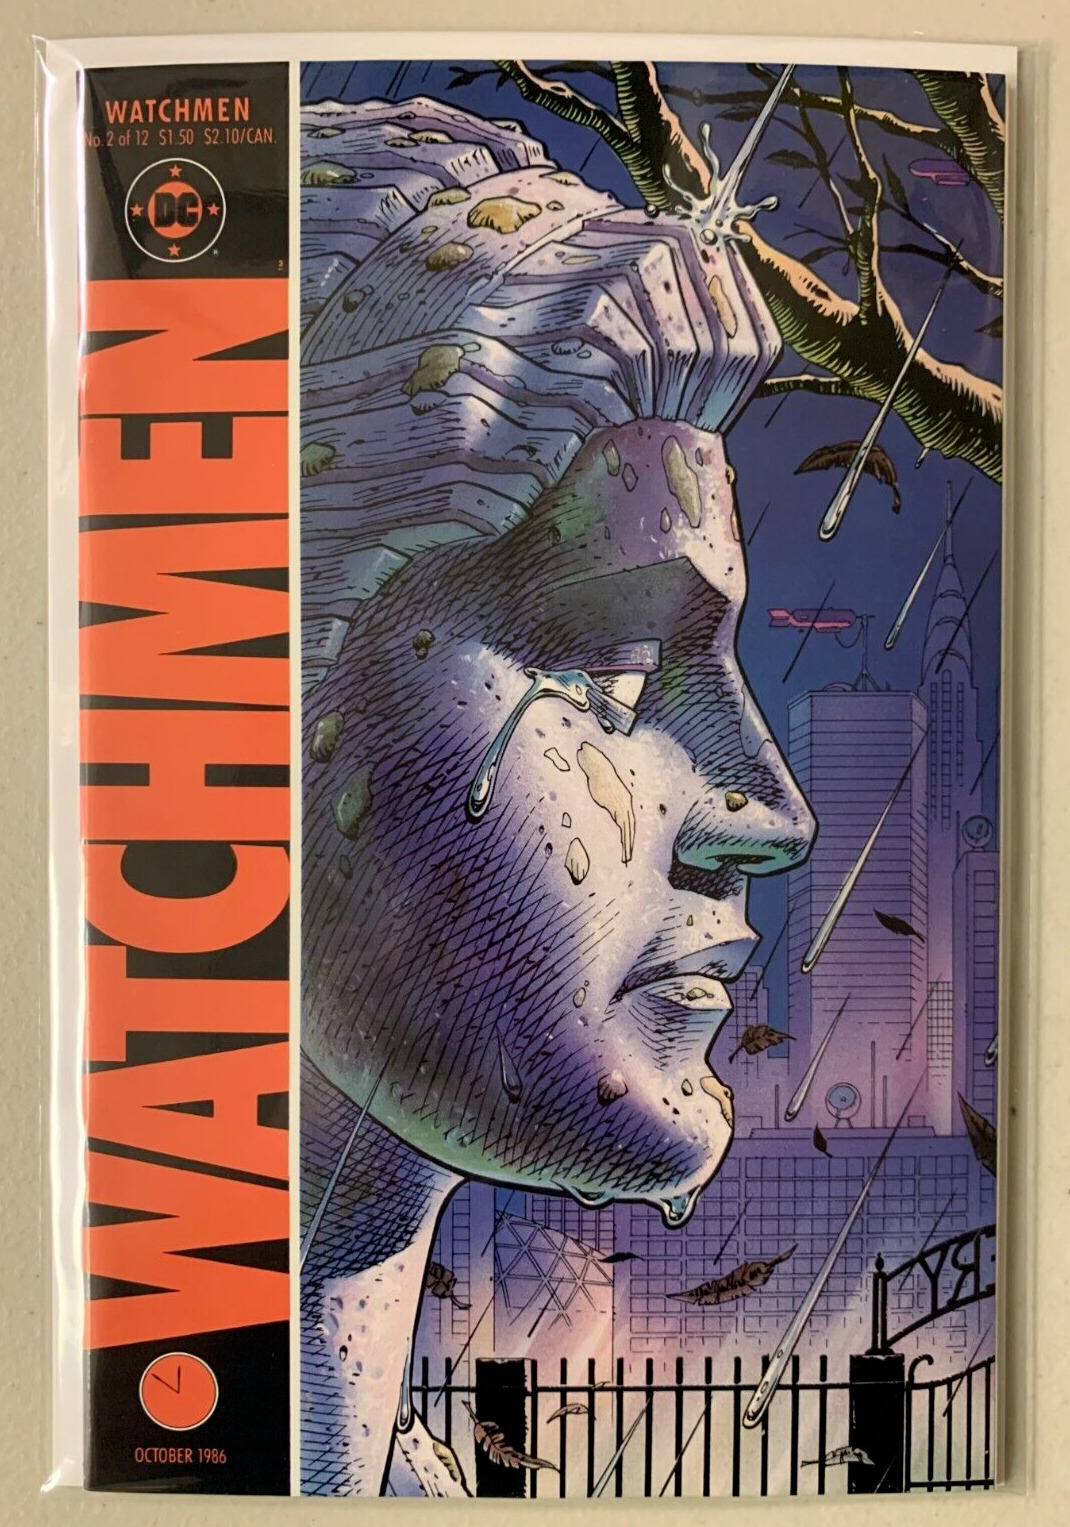 Watchmen #2 DC (8.5 VF+) (1986)